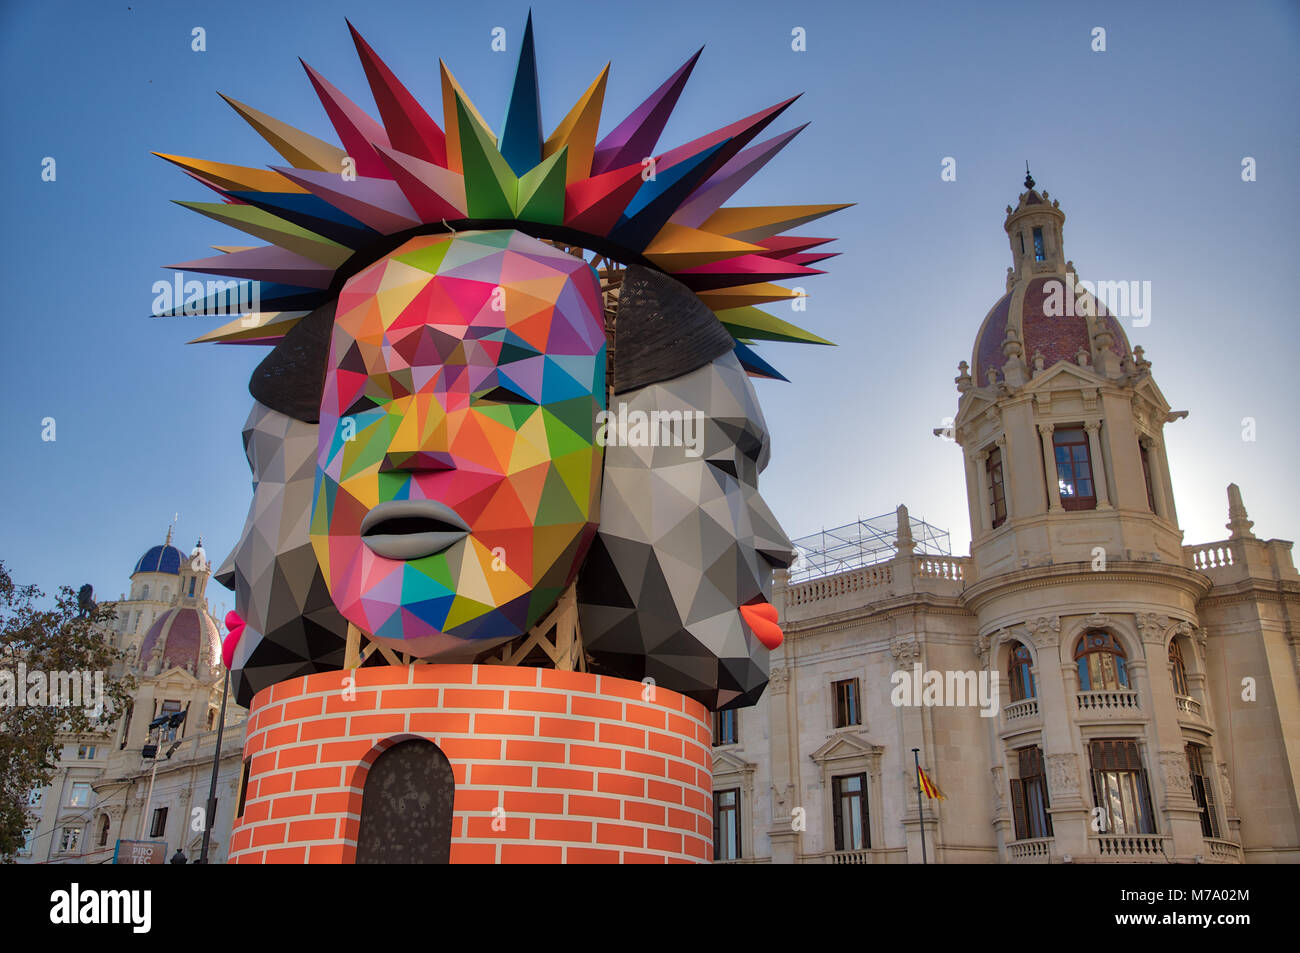 VALENCIA, Spanien - 3/9/2018: Nahaufnahme von einem großen Kopf konfrontiert, die Teil eines größeren Fallas Statue in der Plaza del Ayuntamiento eingestellt werden Stockfoto